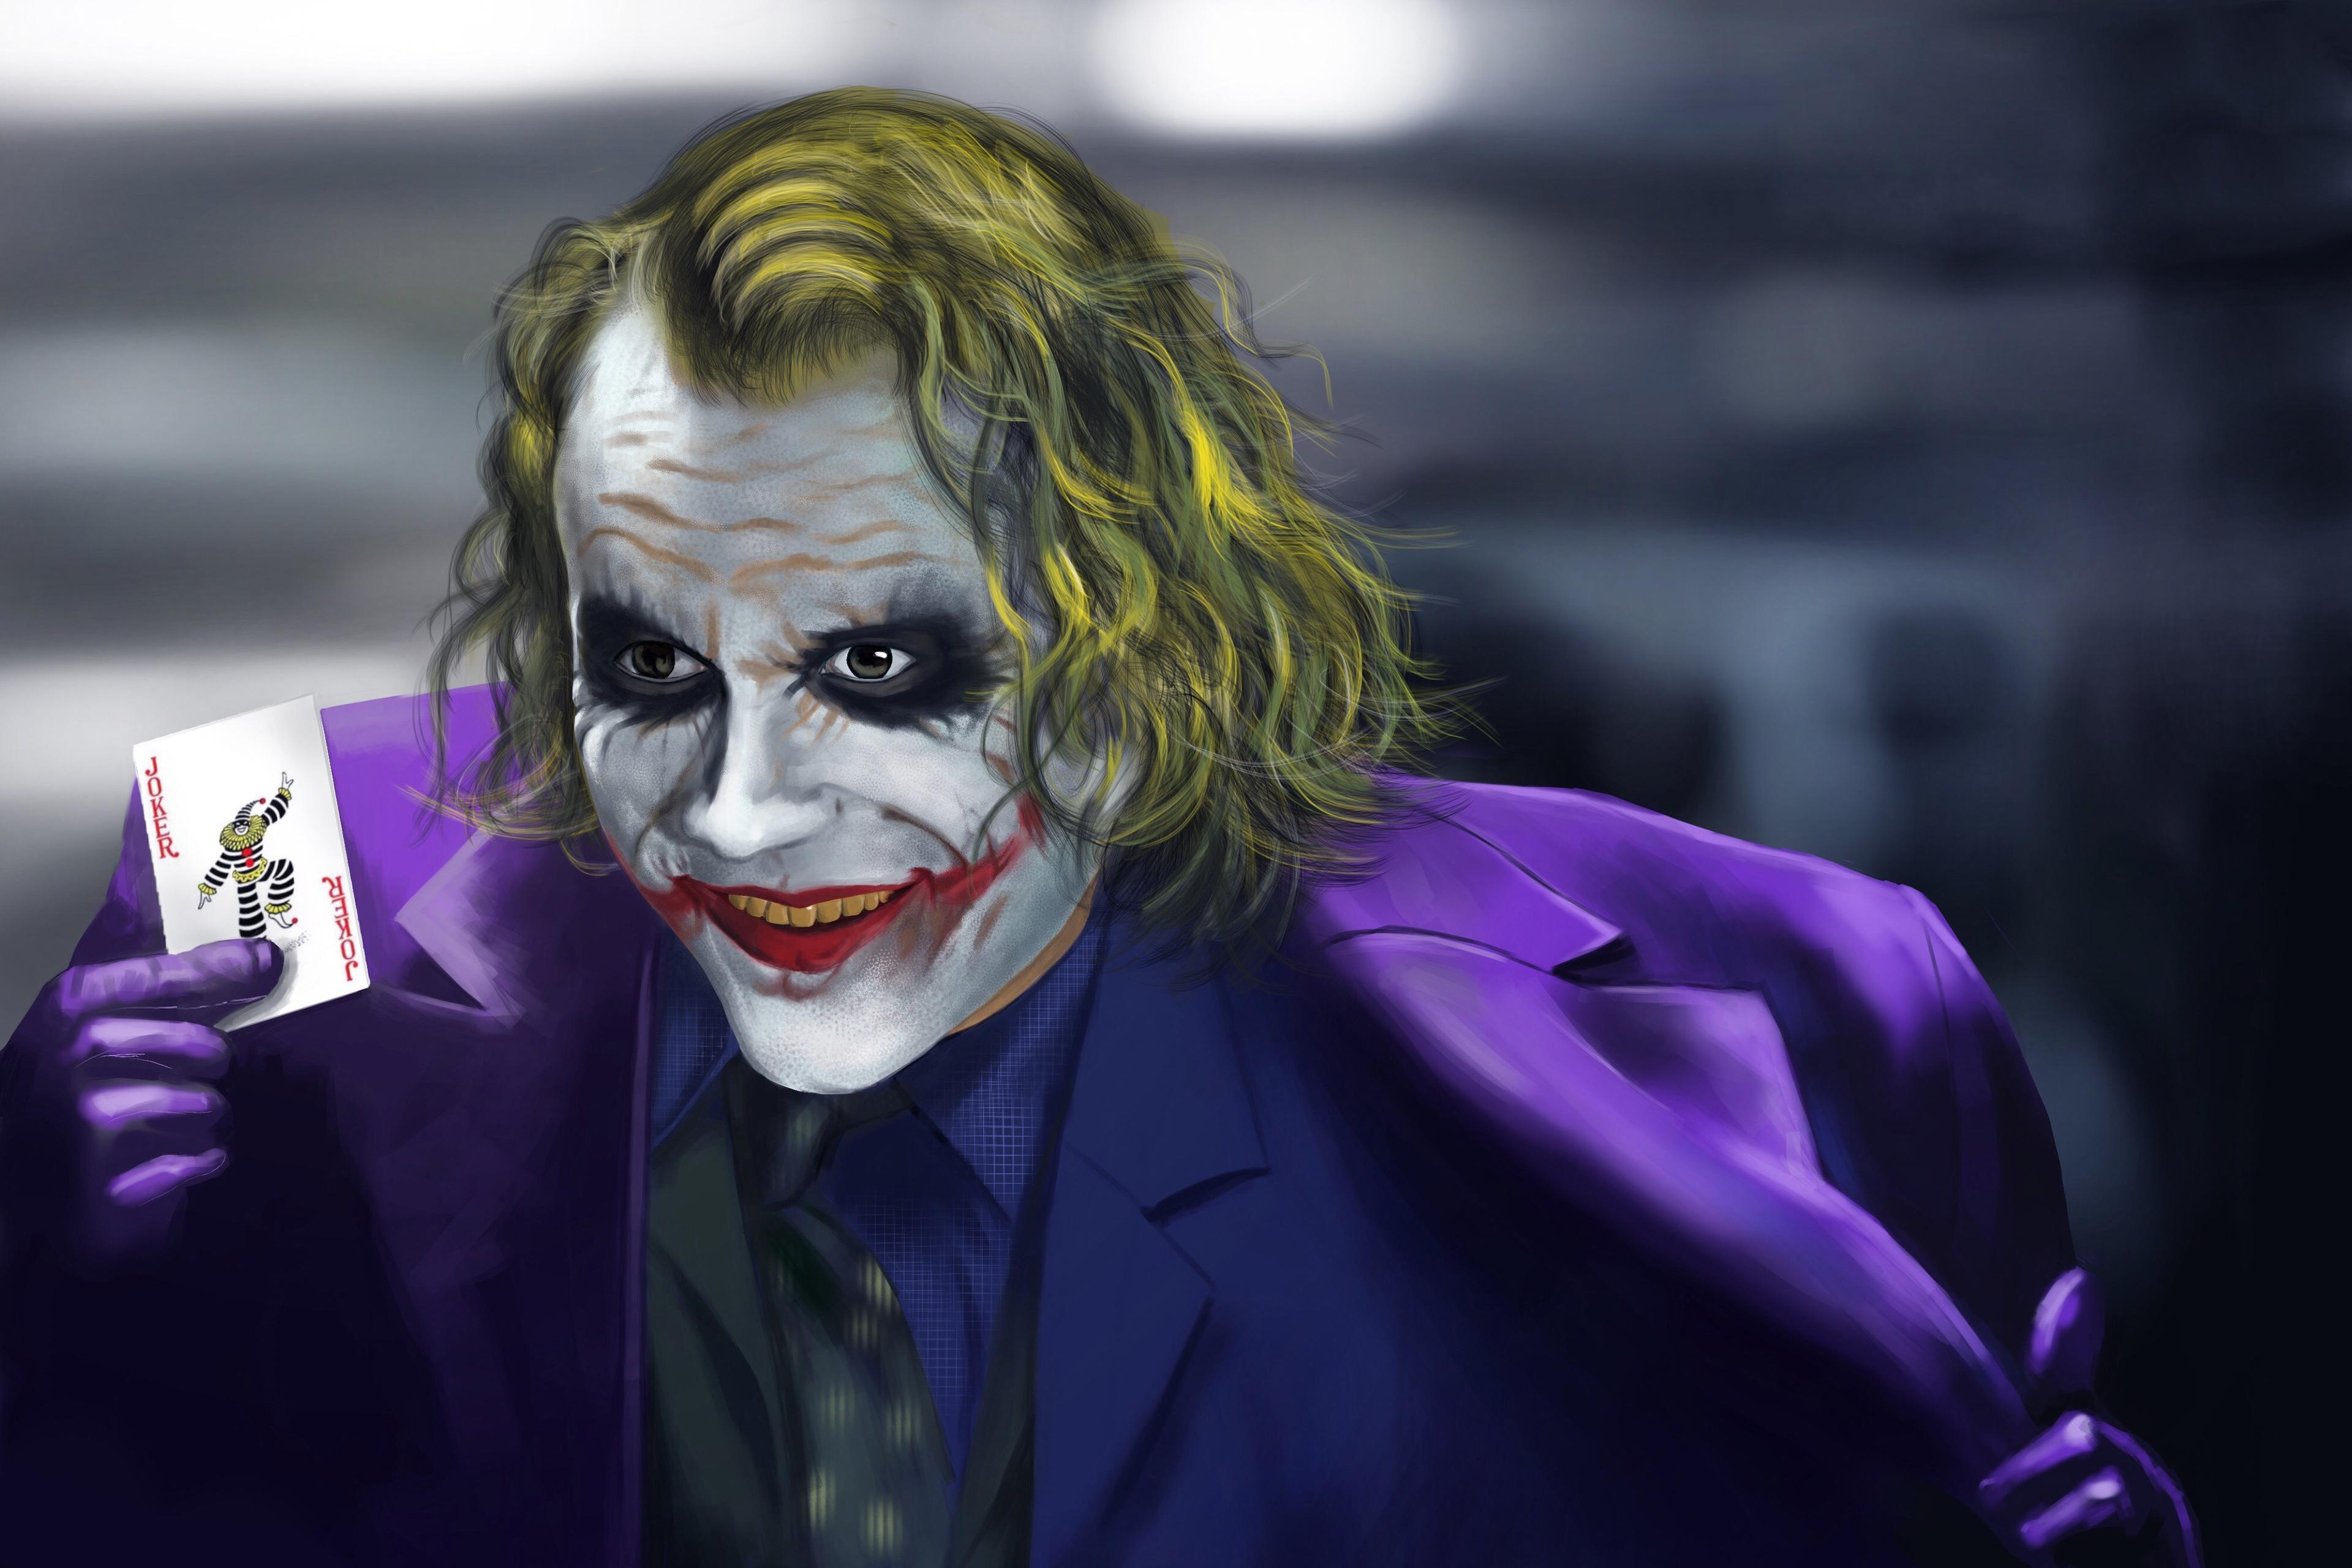 3840 x 2560 · jpeg - Joker Photos Wallpaper : Top 250 Joker Wallpapers 4k + HD _ A desktop ...